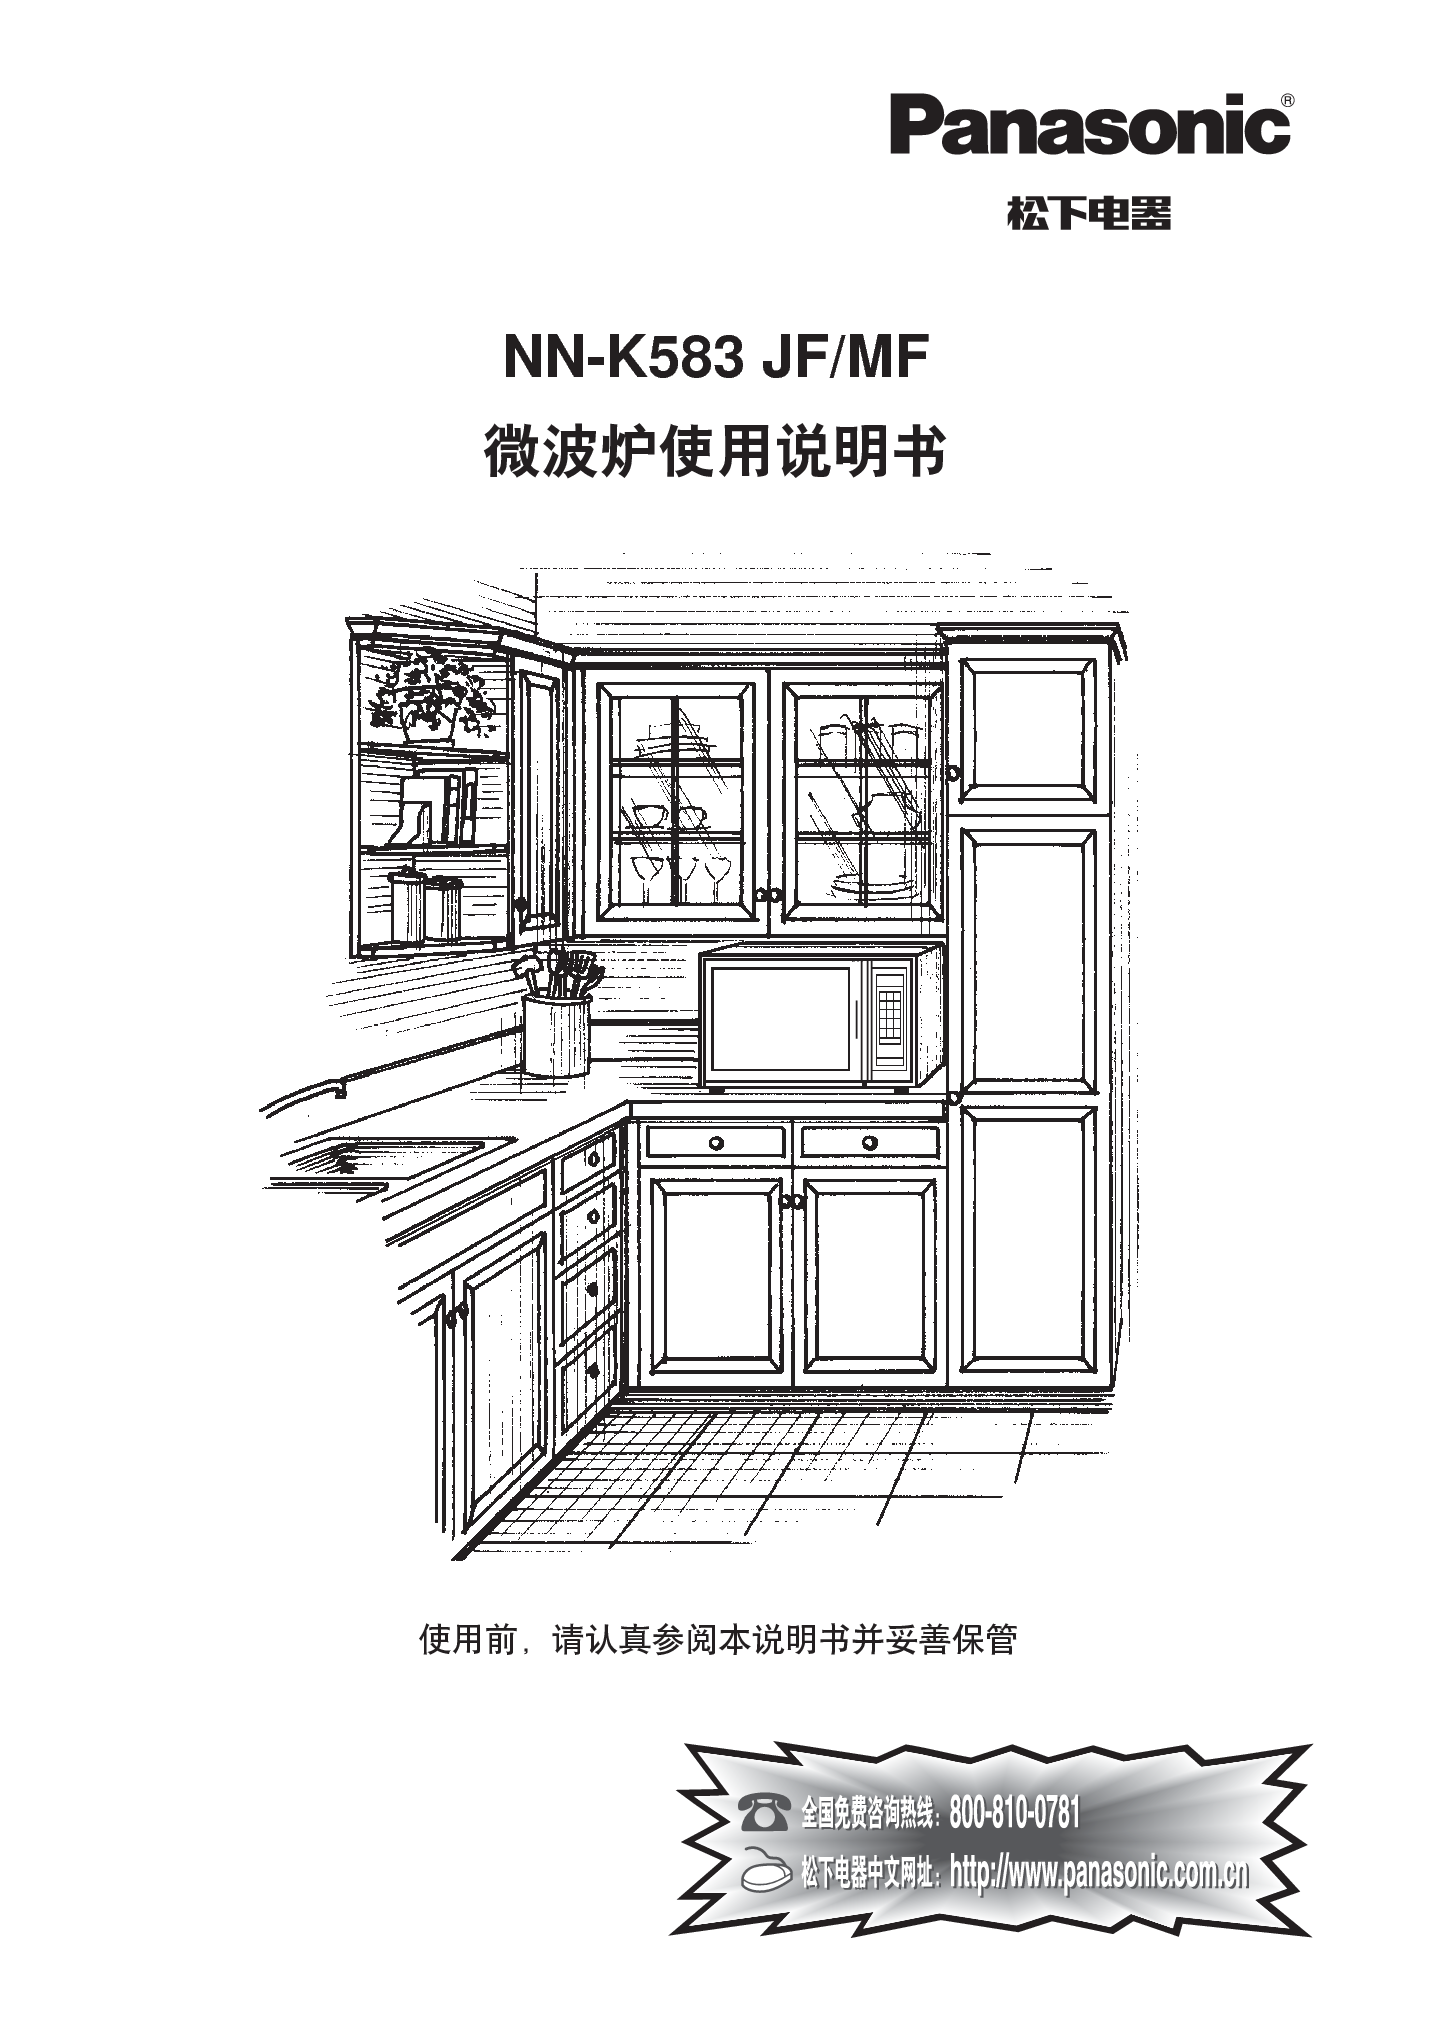 松下 Panasonic NN-K583JF 说明书 封面